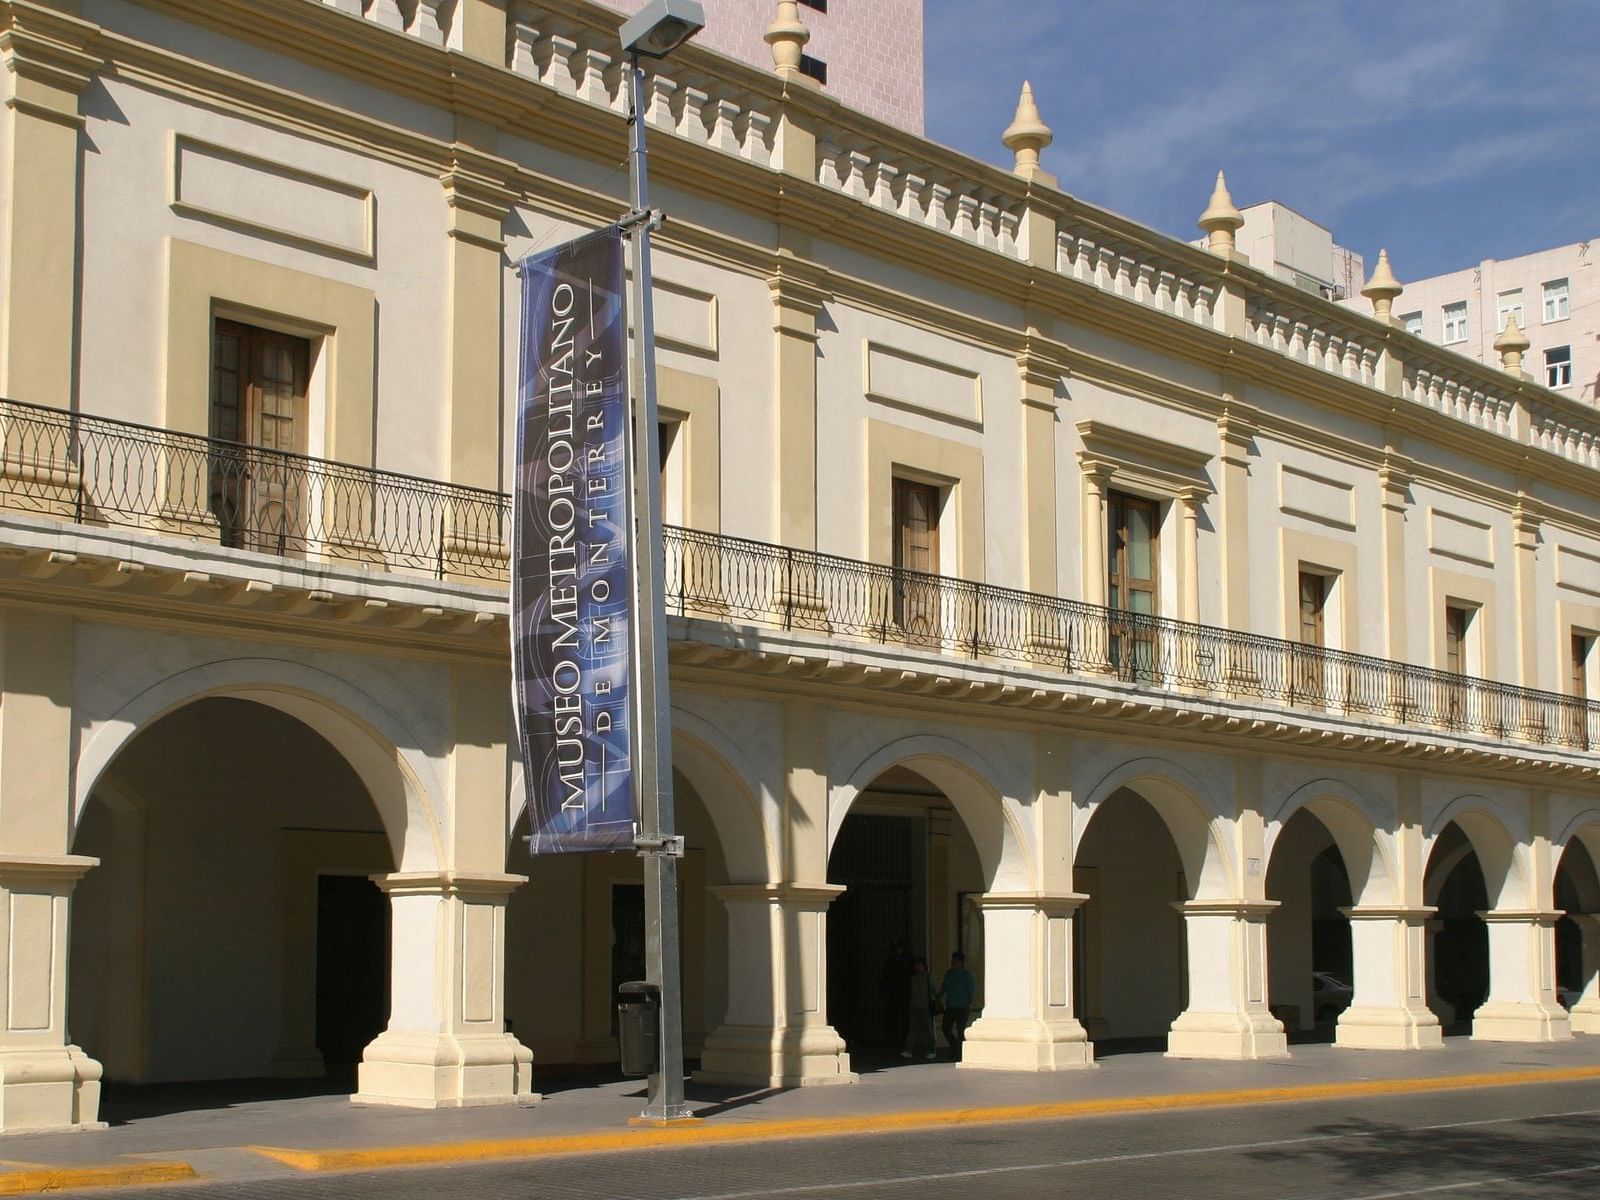 Metropolitan Museum of Monterrey near La Colección